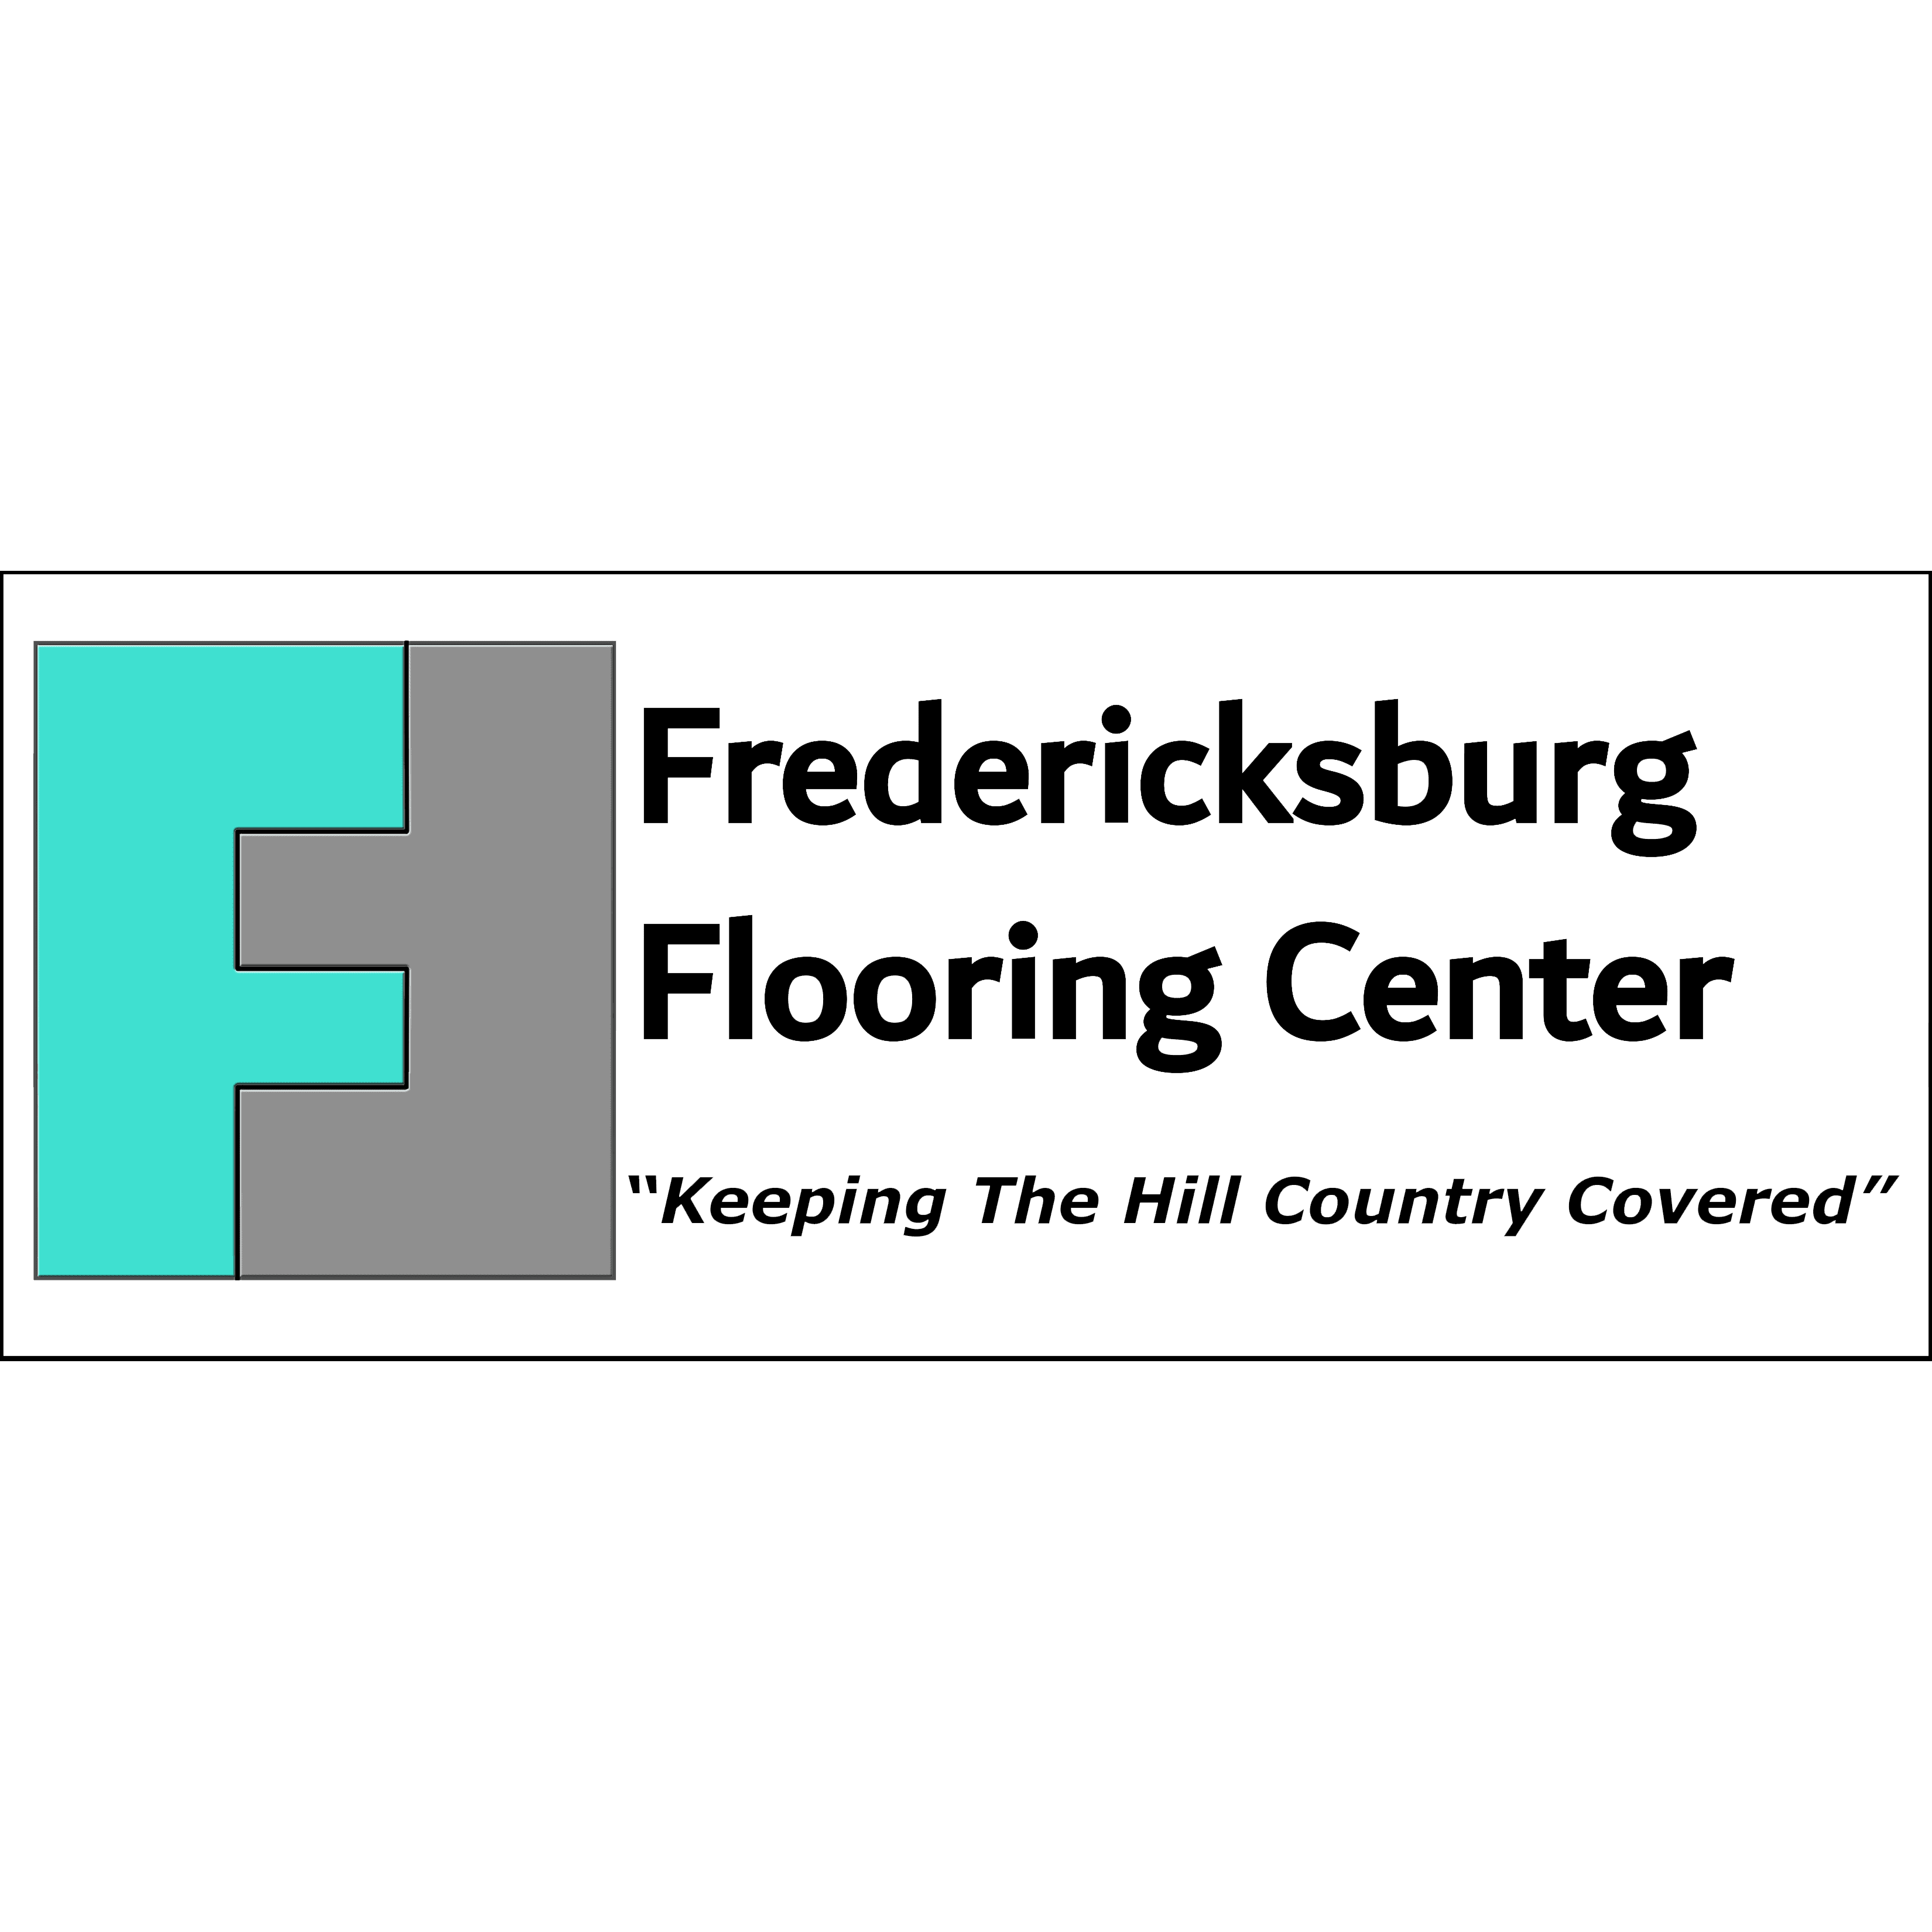 Fredericksburg Flooring Center